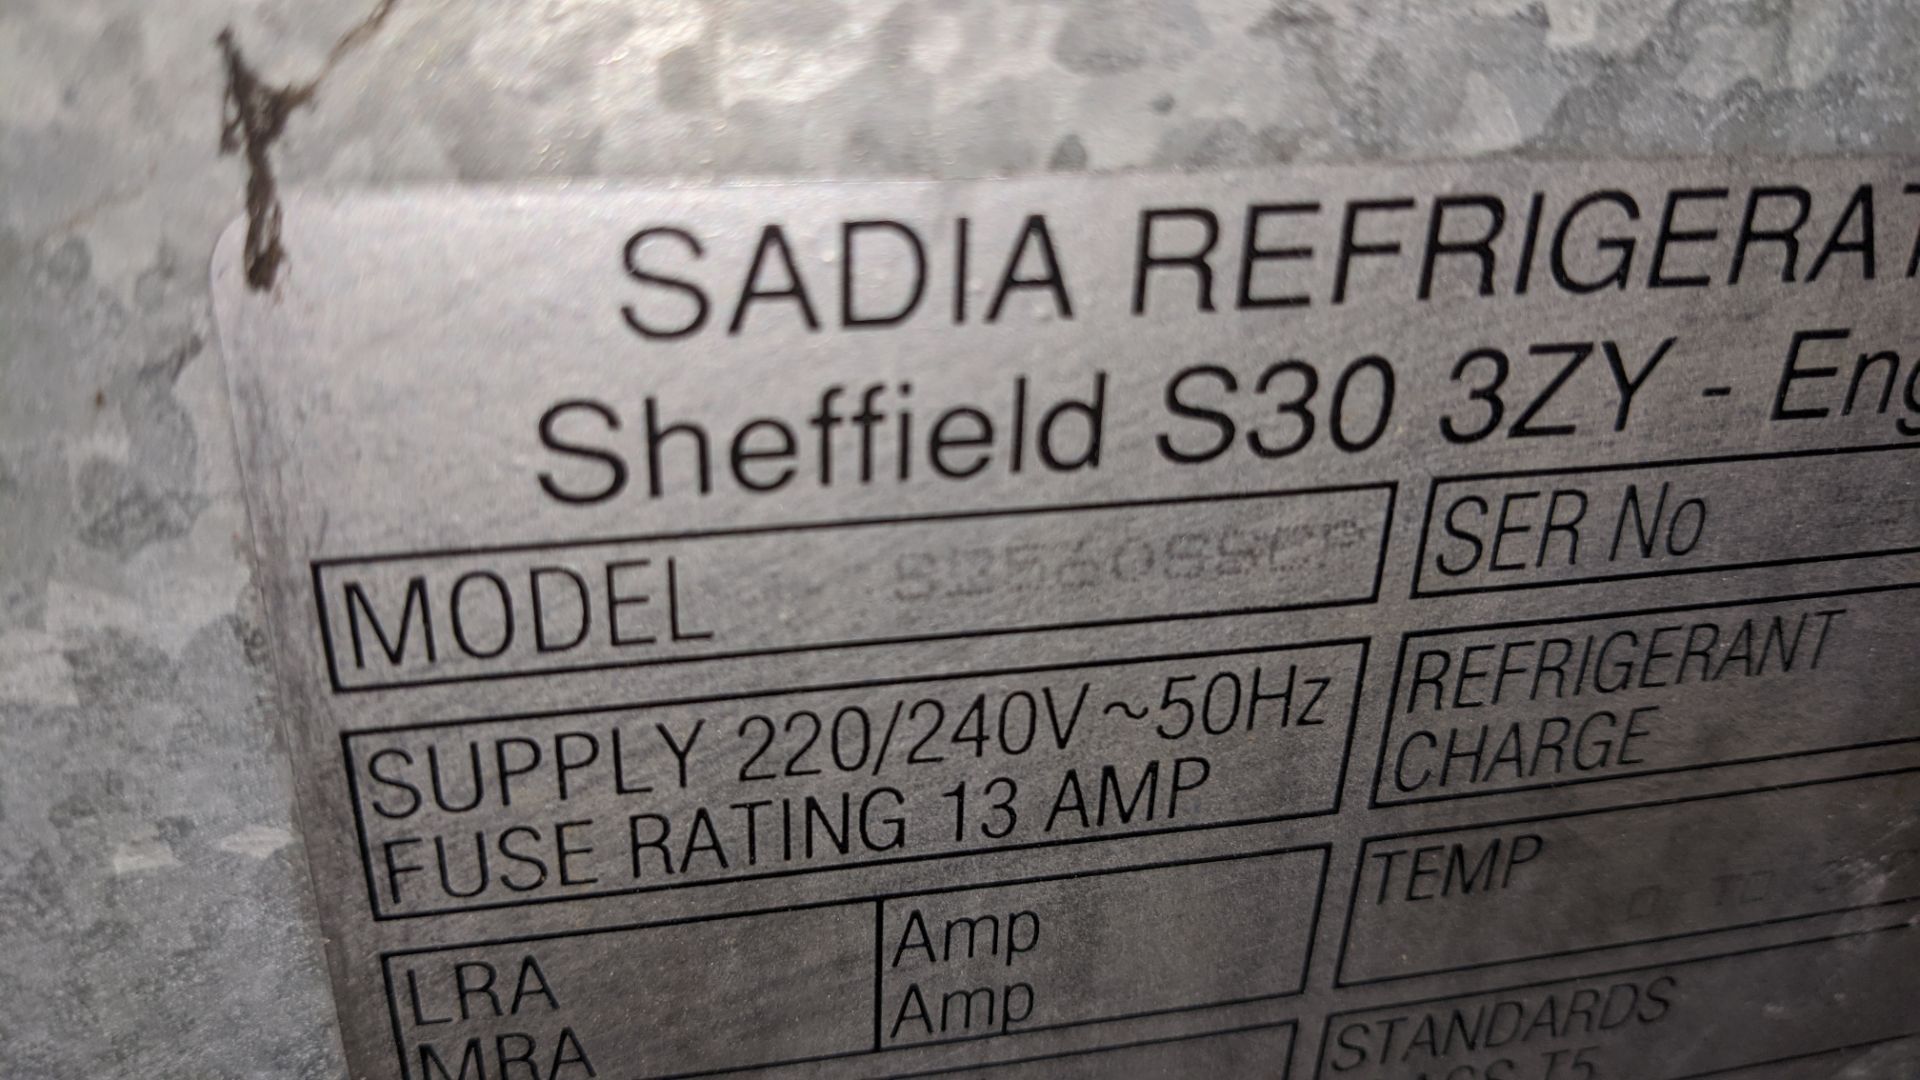 Sadia Refrigeration Senator fridge - Image 8 of 8